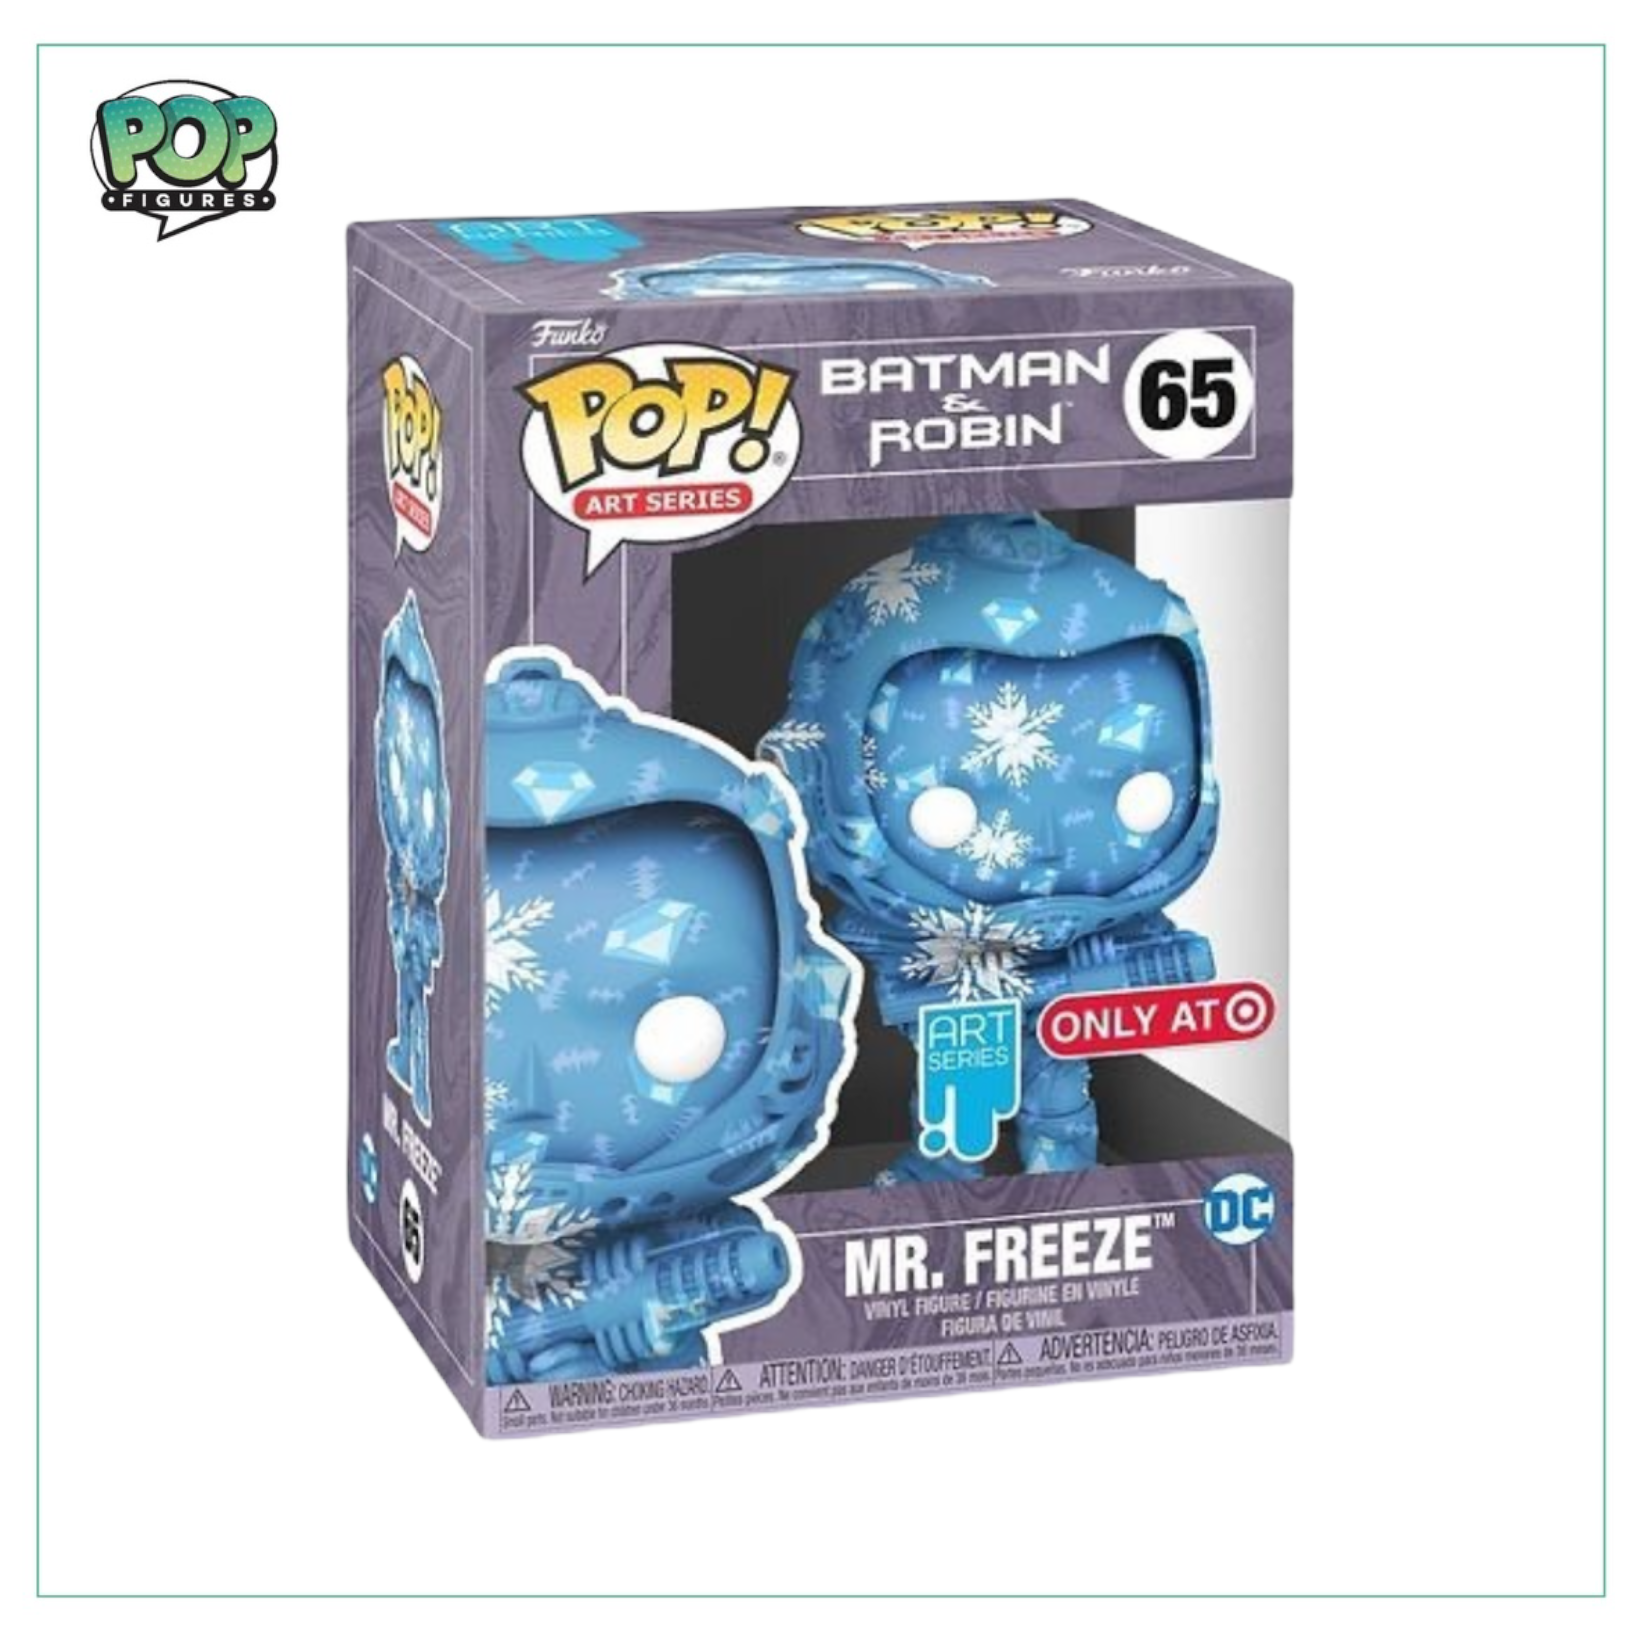 Mr Freeze #65 (Artist Series) Funko Pop! DC - Target Exclusive